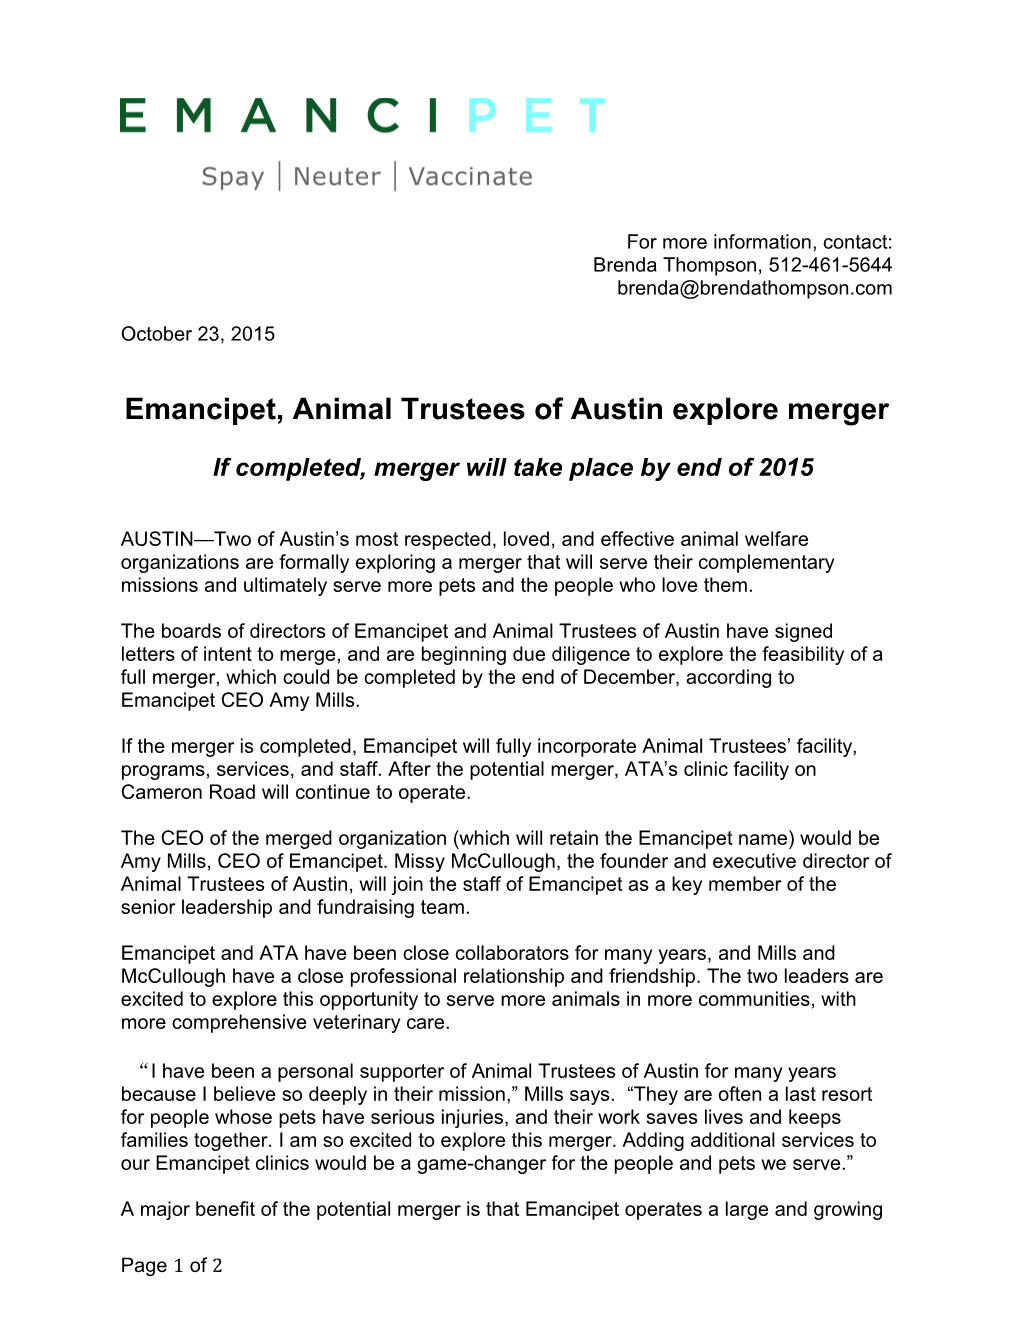 Emancipet, Animal Trustees of Austin Explore Merger